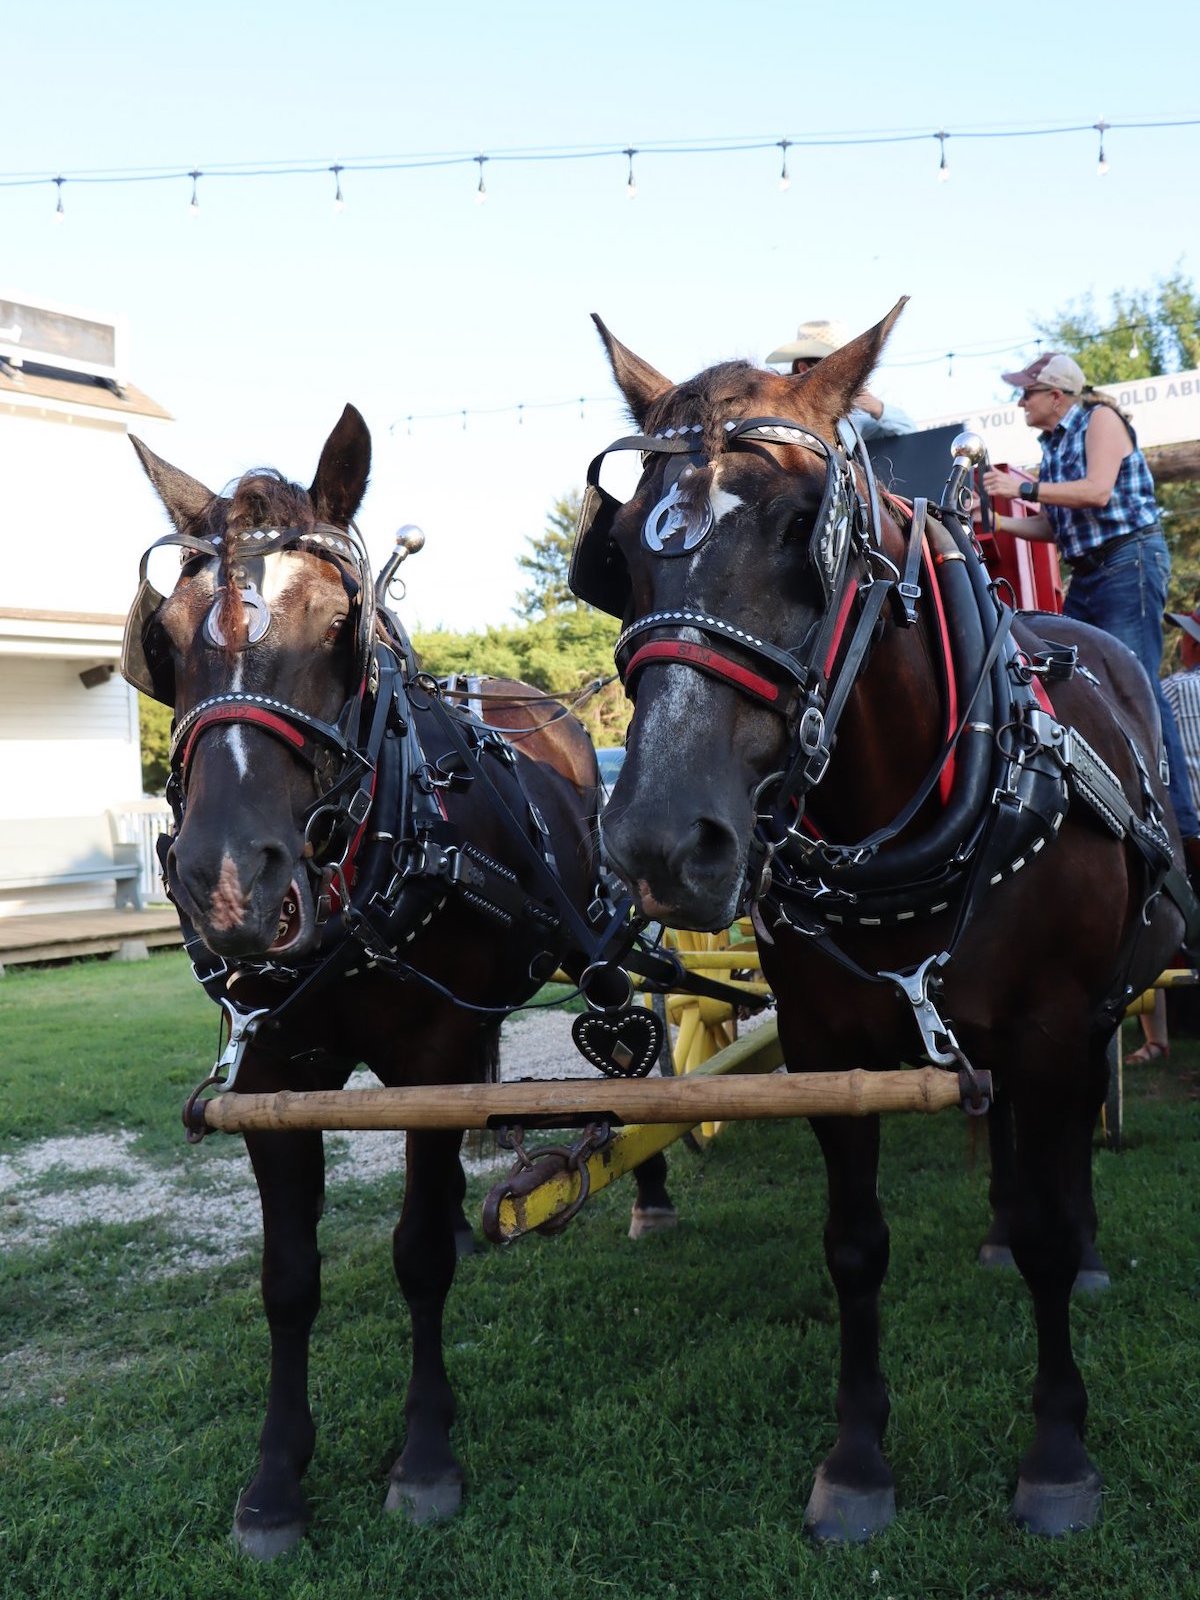 Horses pulling carriage at Old Abilene Town in Abilene, Kansas